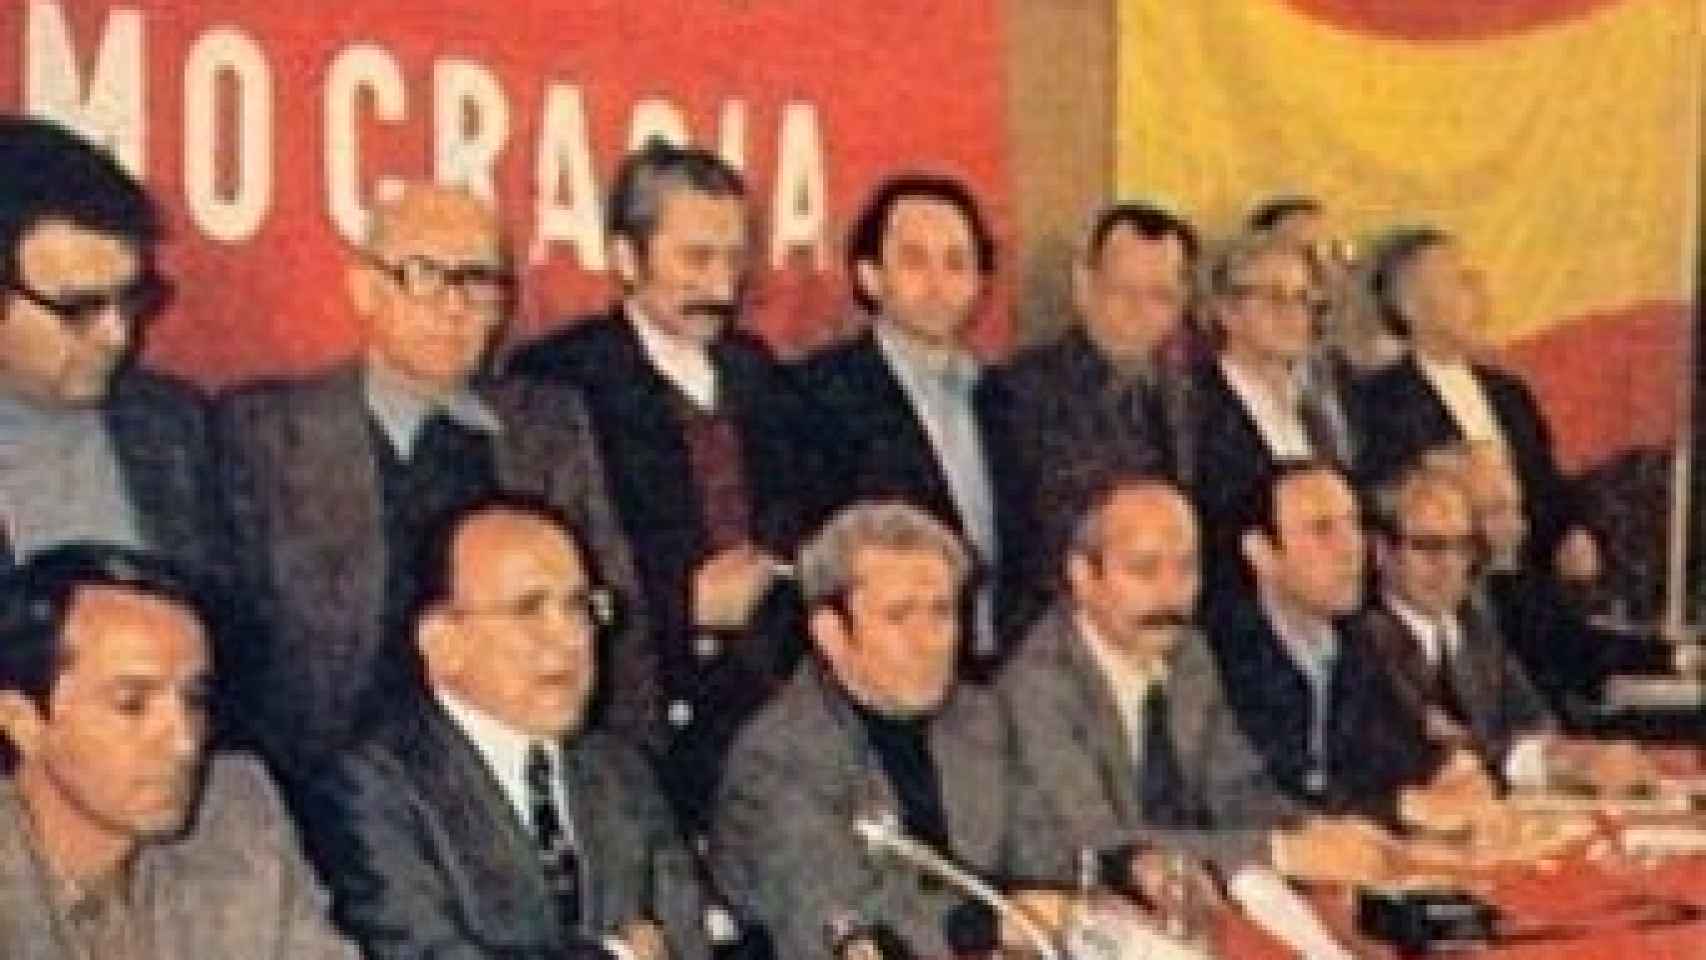 Santiago Carrillo, Marcelino Camacho y el resto de líderes del PCE, el 16 de abril de 1977, con la bandera rojigualda.